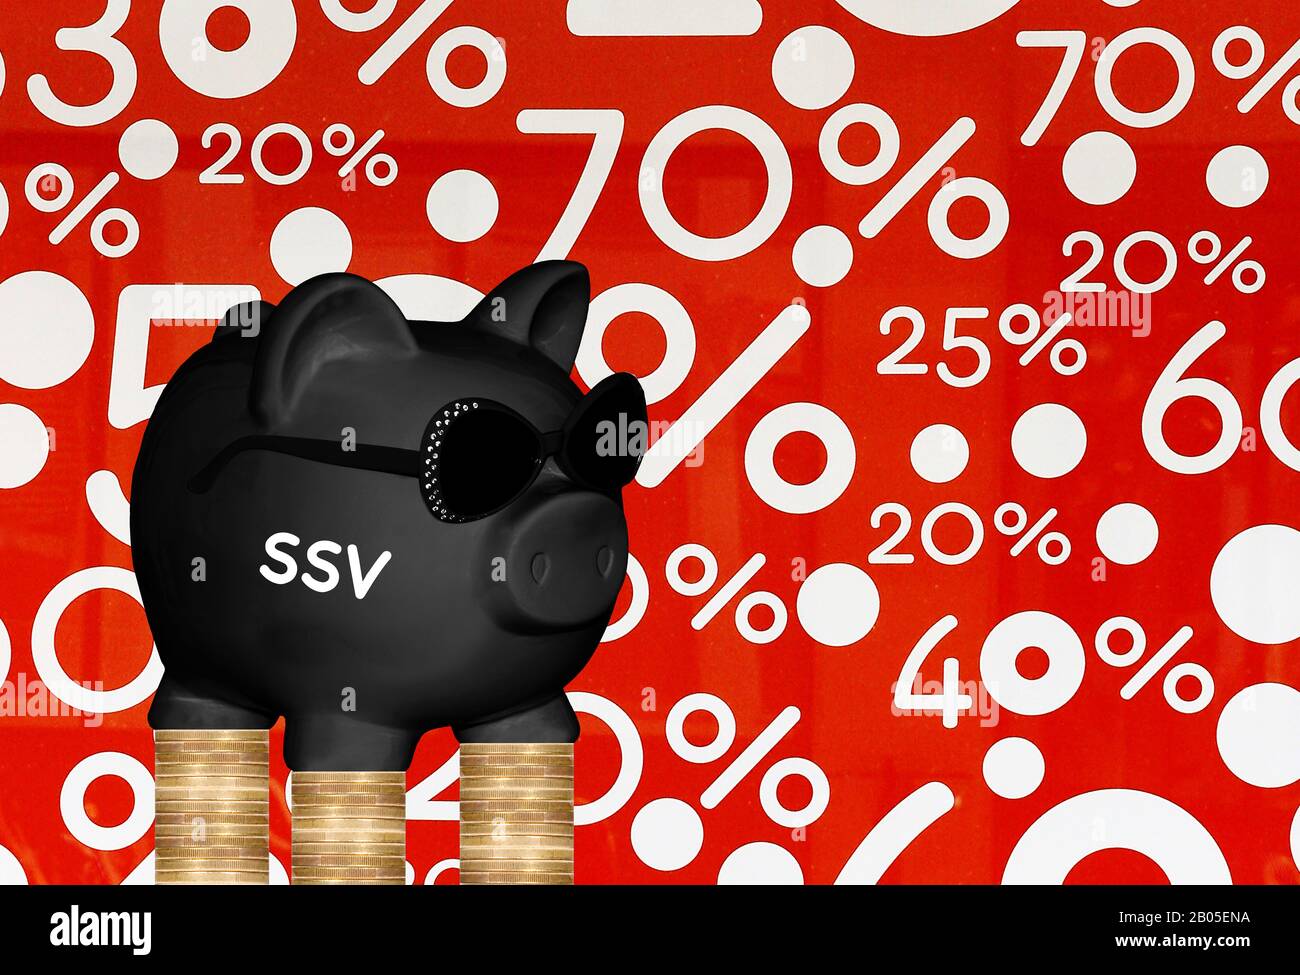 Banco negro piggy con gafas de sol y letras SSV, ofertas especiales y pilas de monedas en el fondo, composición Foto de stock